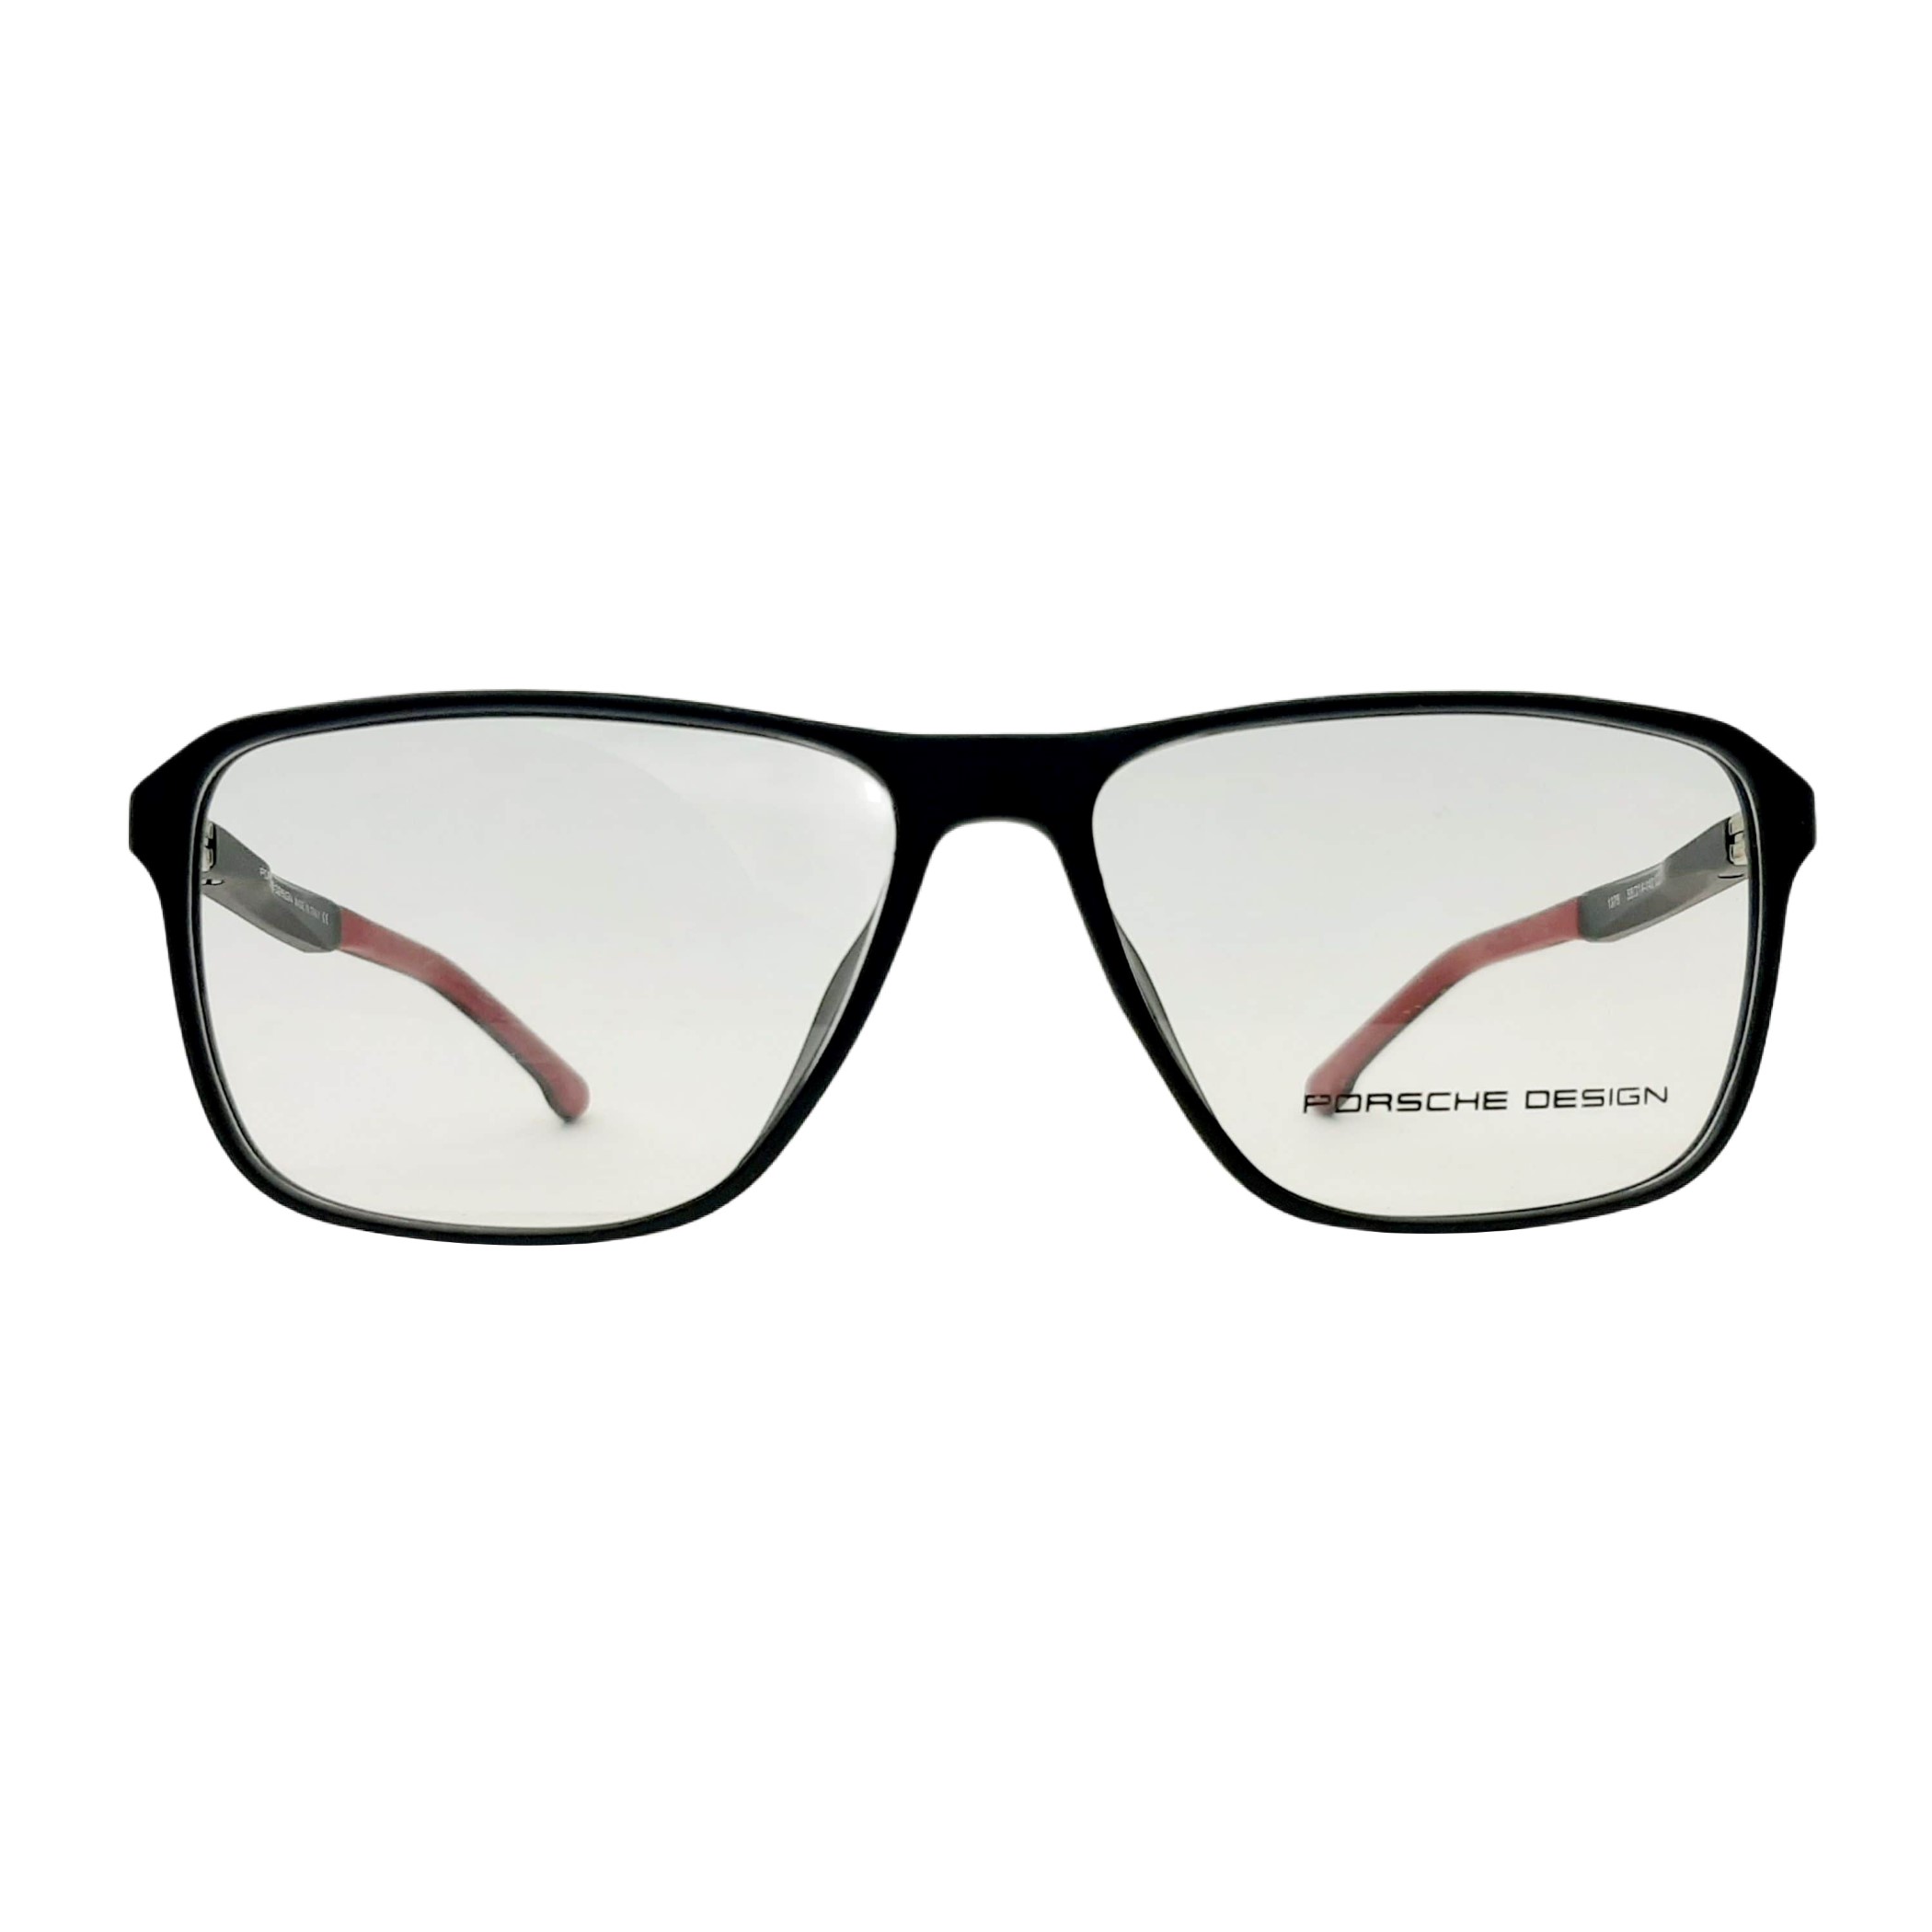 فریم عینک طبی پورش دیزاین مدل P1375c2